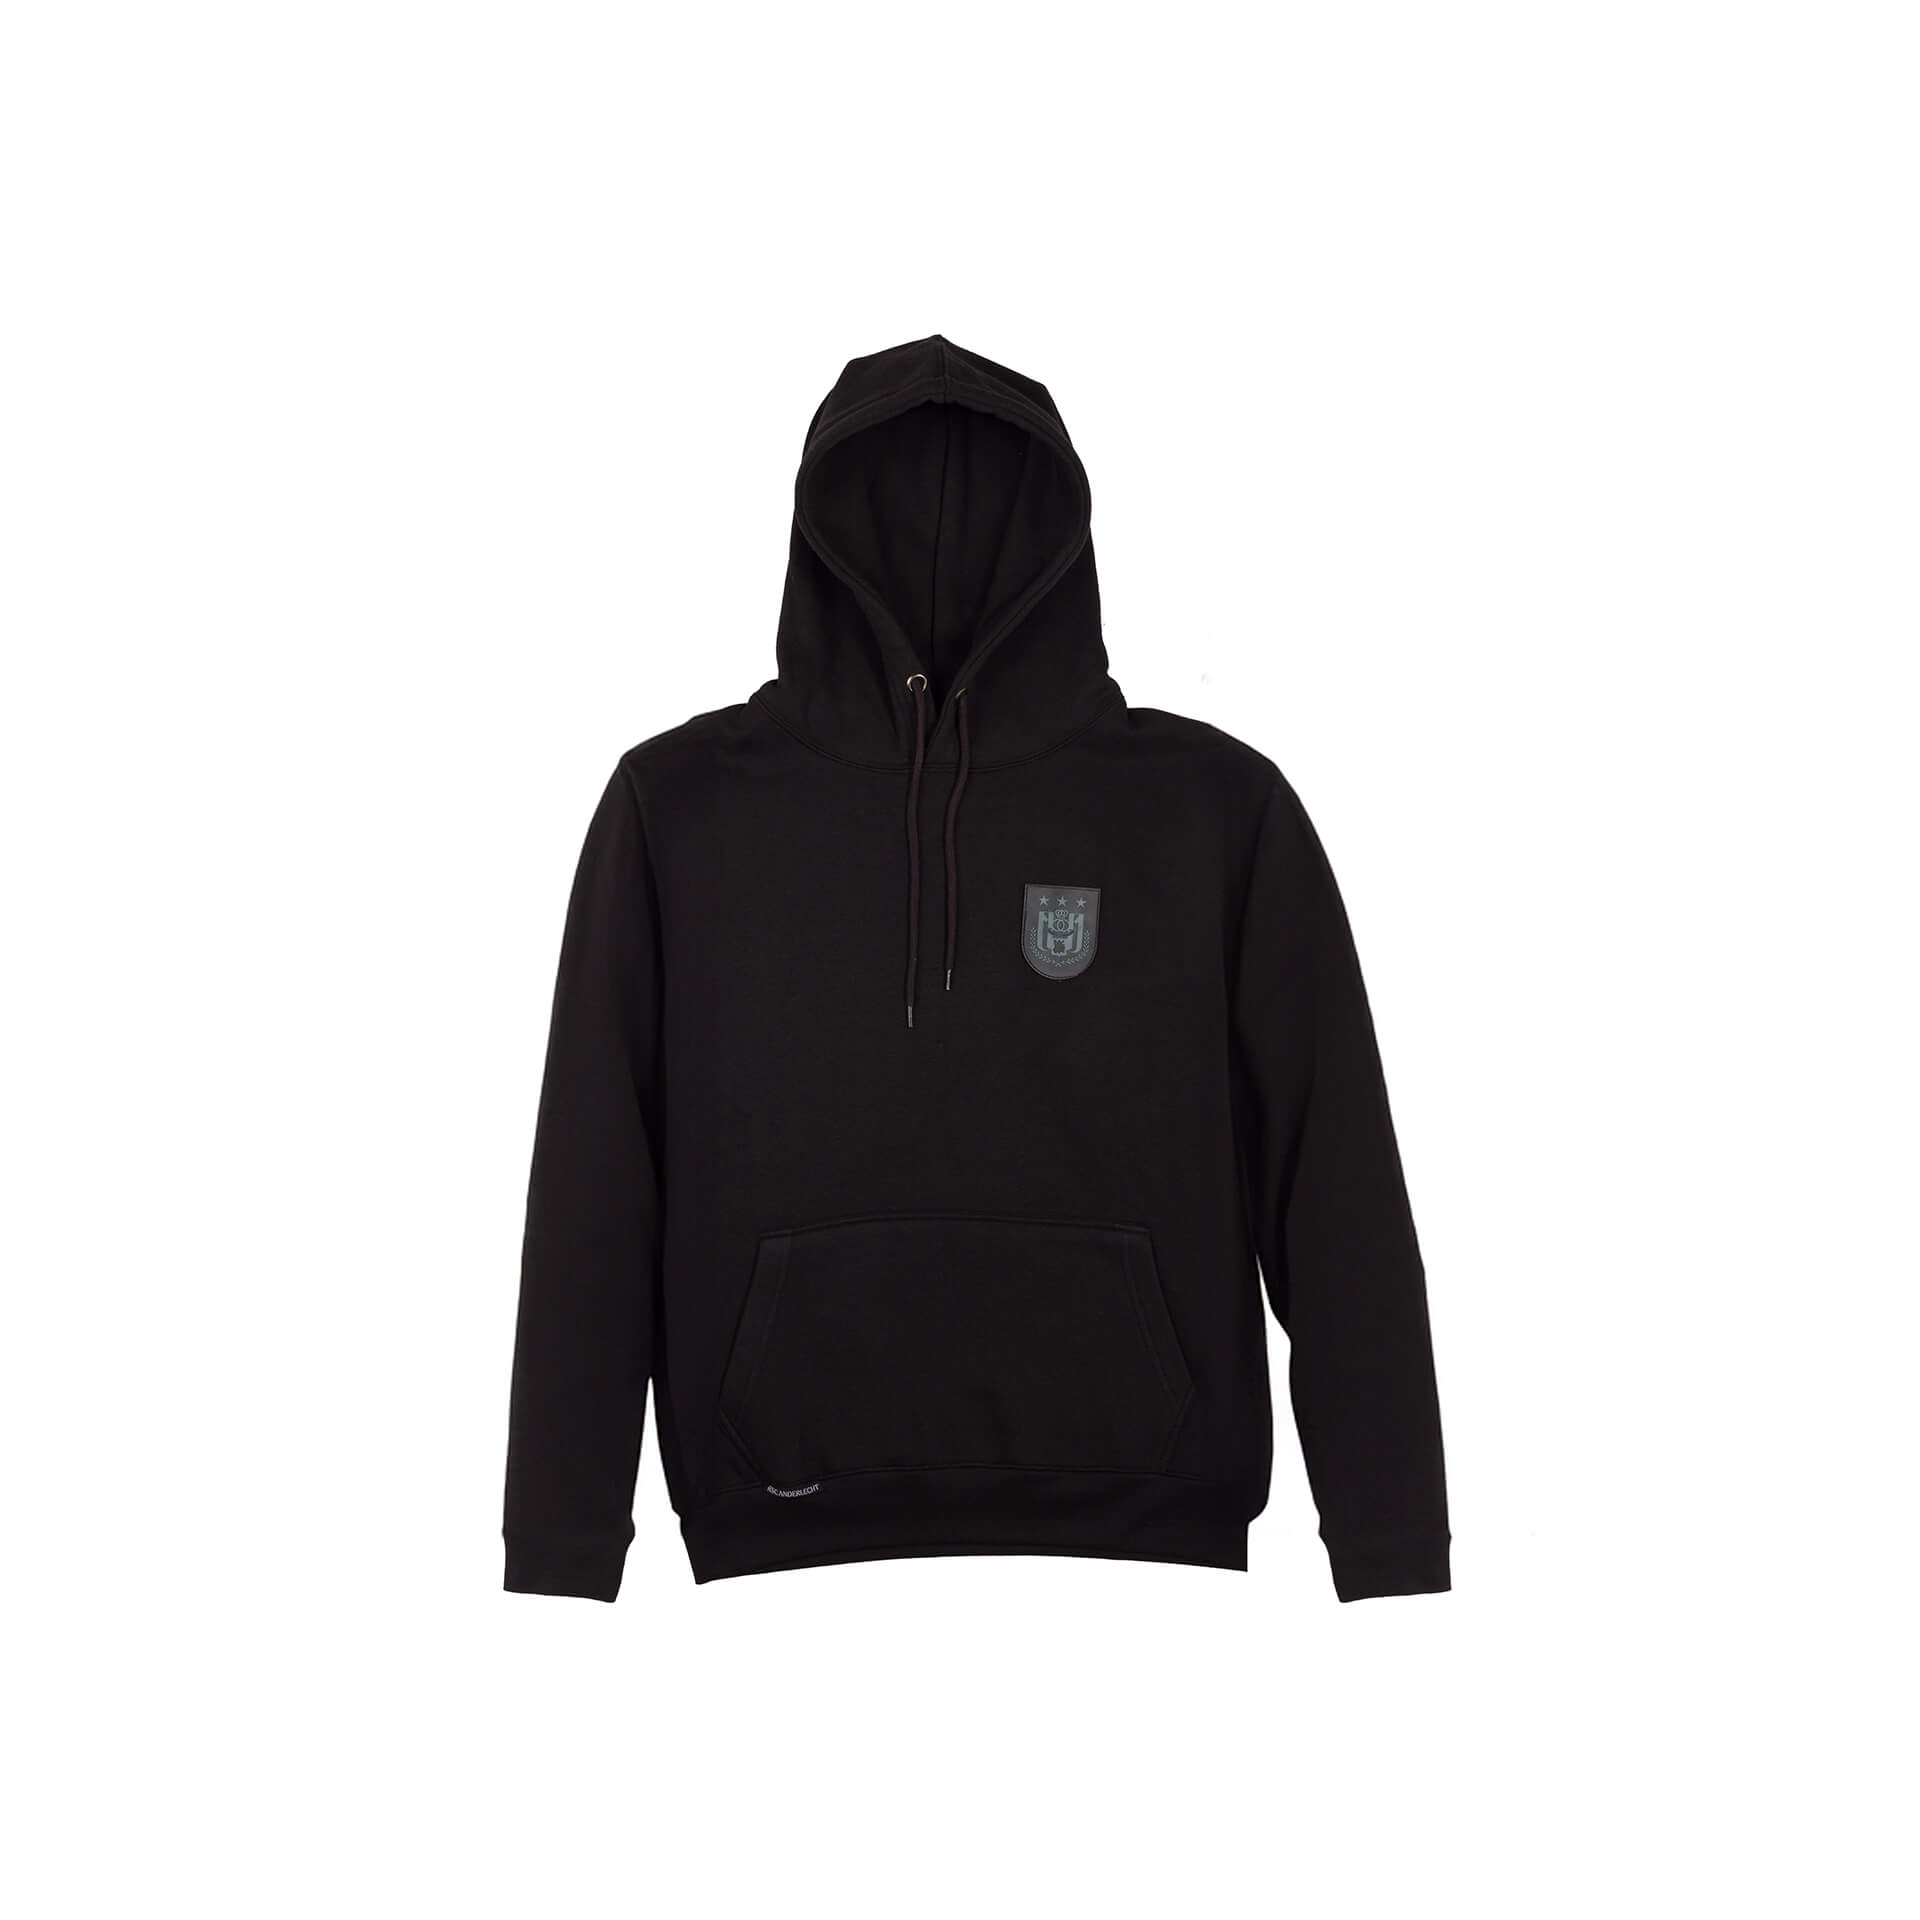 RSCA black hoodie